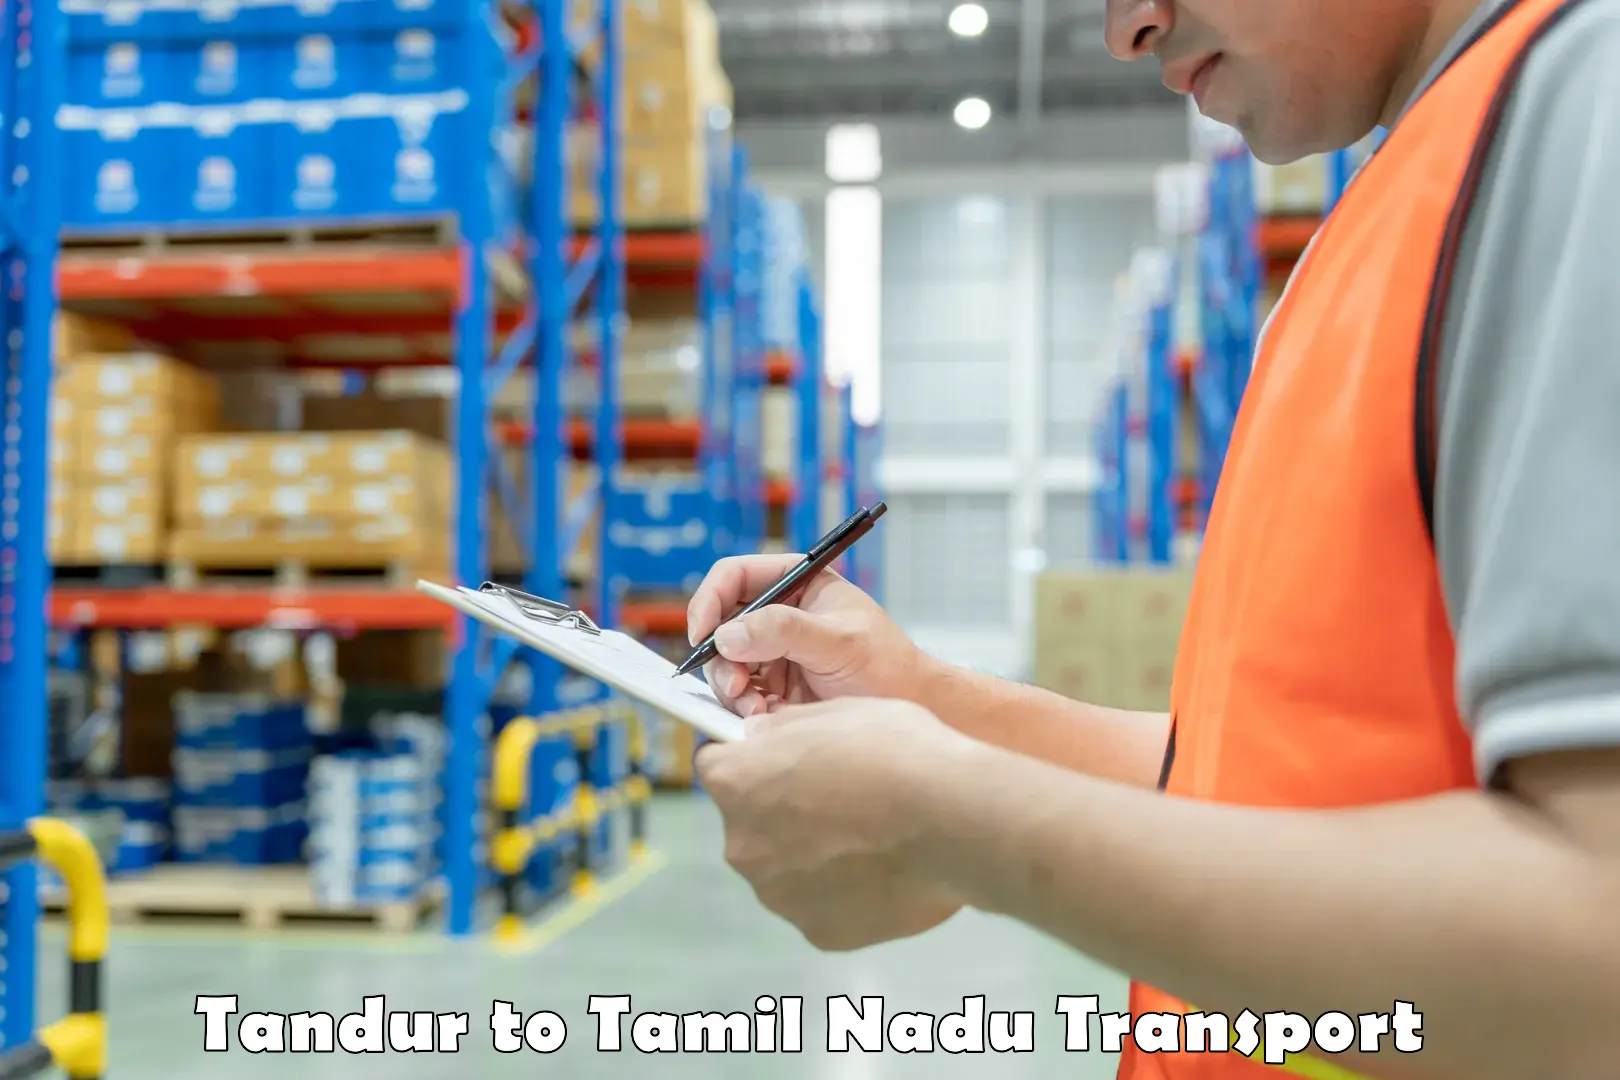 Pick up transport service Tandur to Tamil Nadu